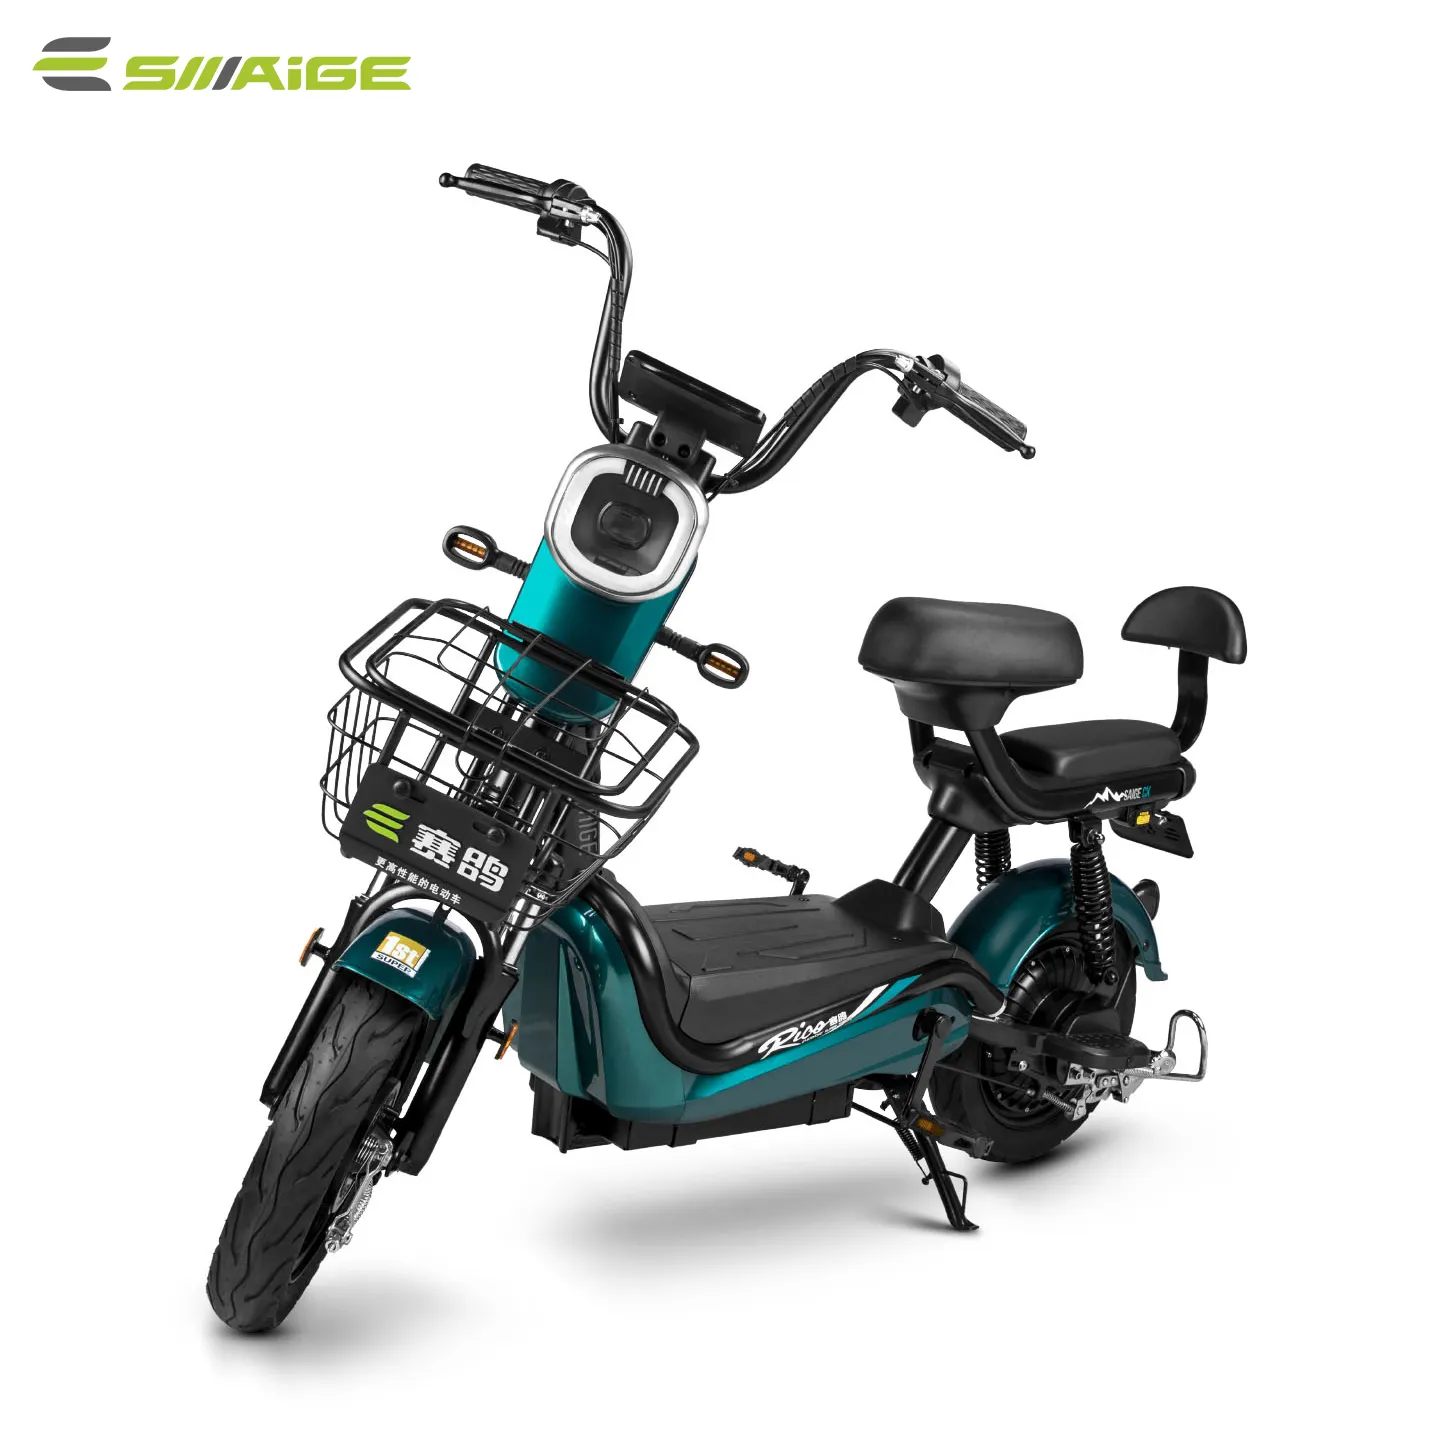 Tongsneige — rouleau à vélo électrique certifié COC, 250w, batterie à assistance électrique, 25km/hr, nouveau modèle